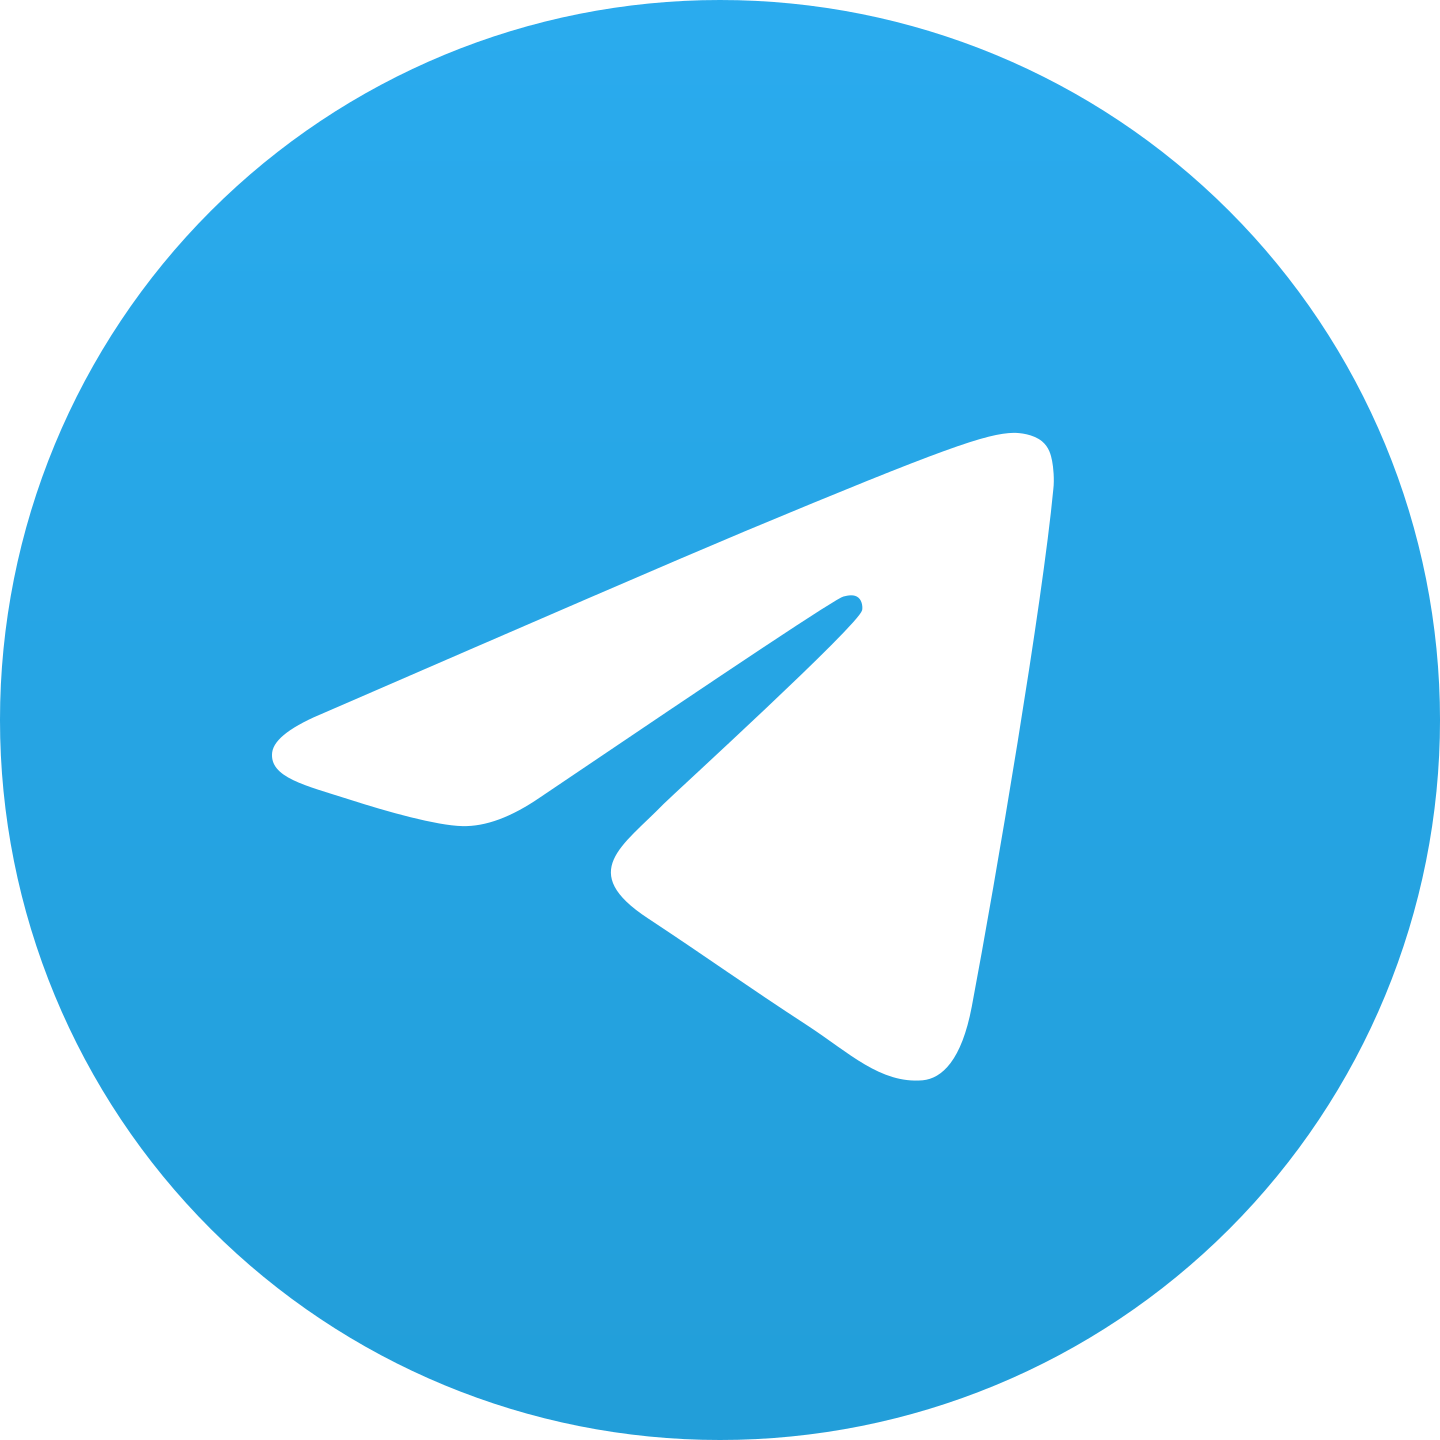 telegram logo 2 1 - Telegram Logo